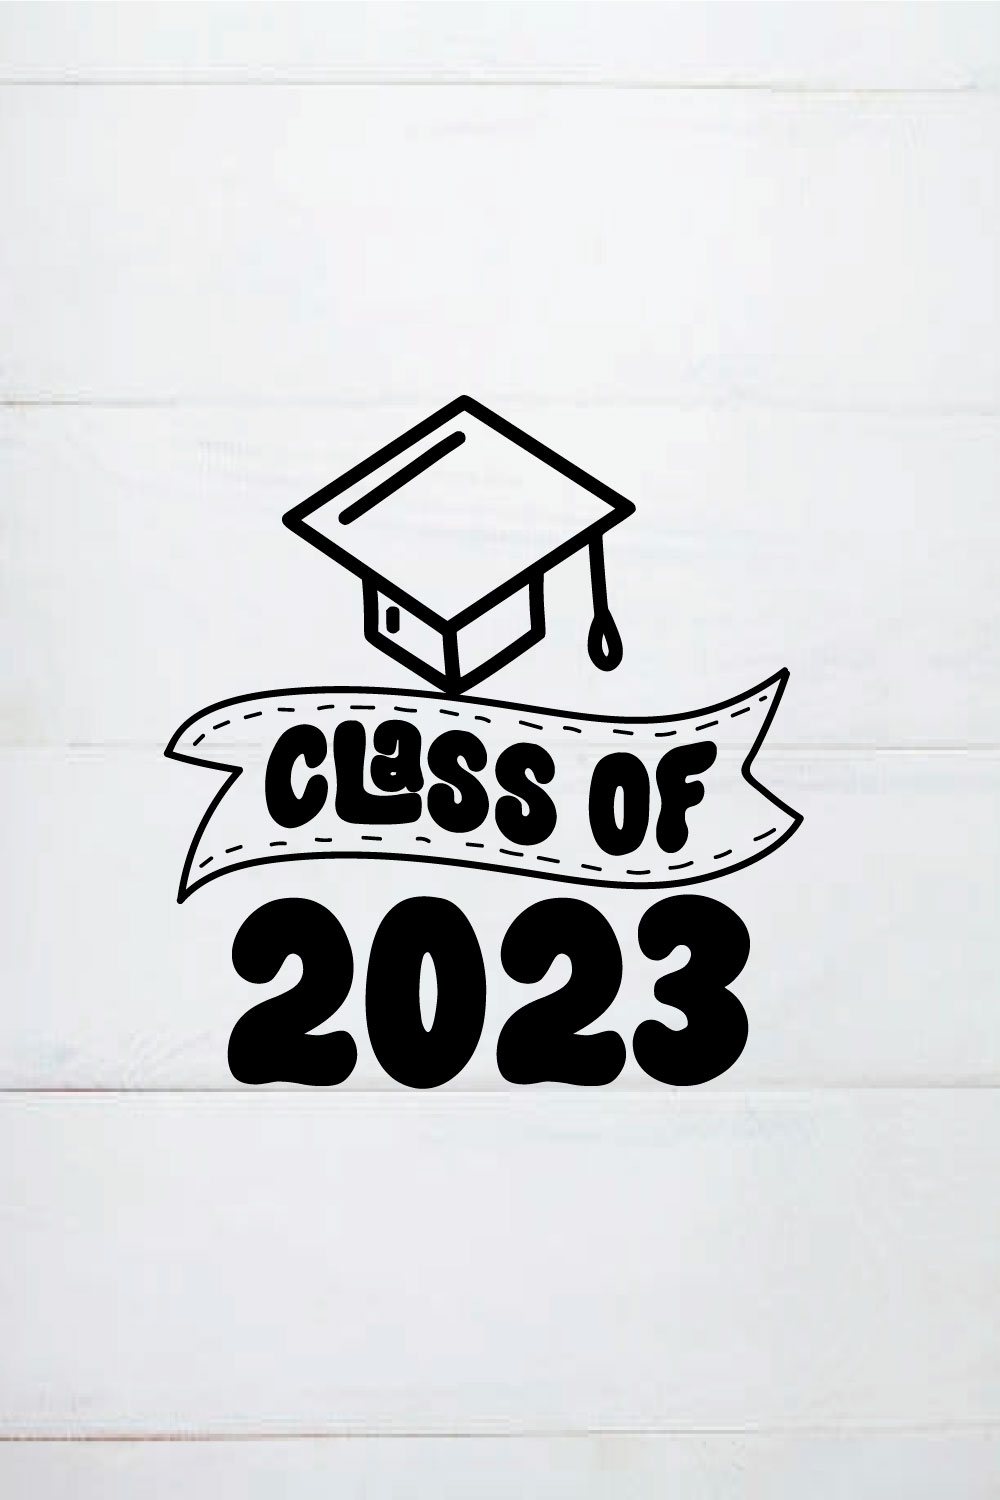 CLASS OF 2023 SHIRT, graduation gifts, graduation shirt pinterest preview image.